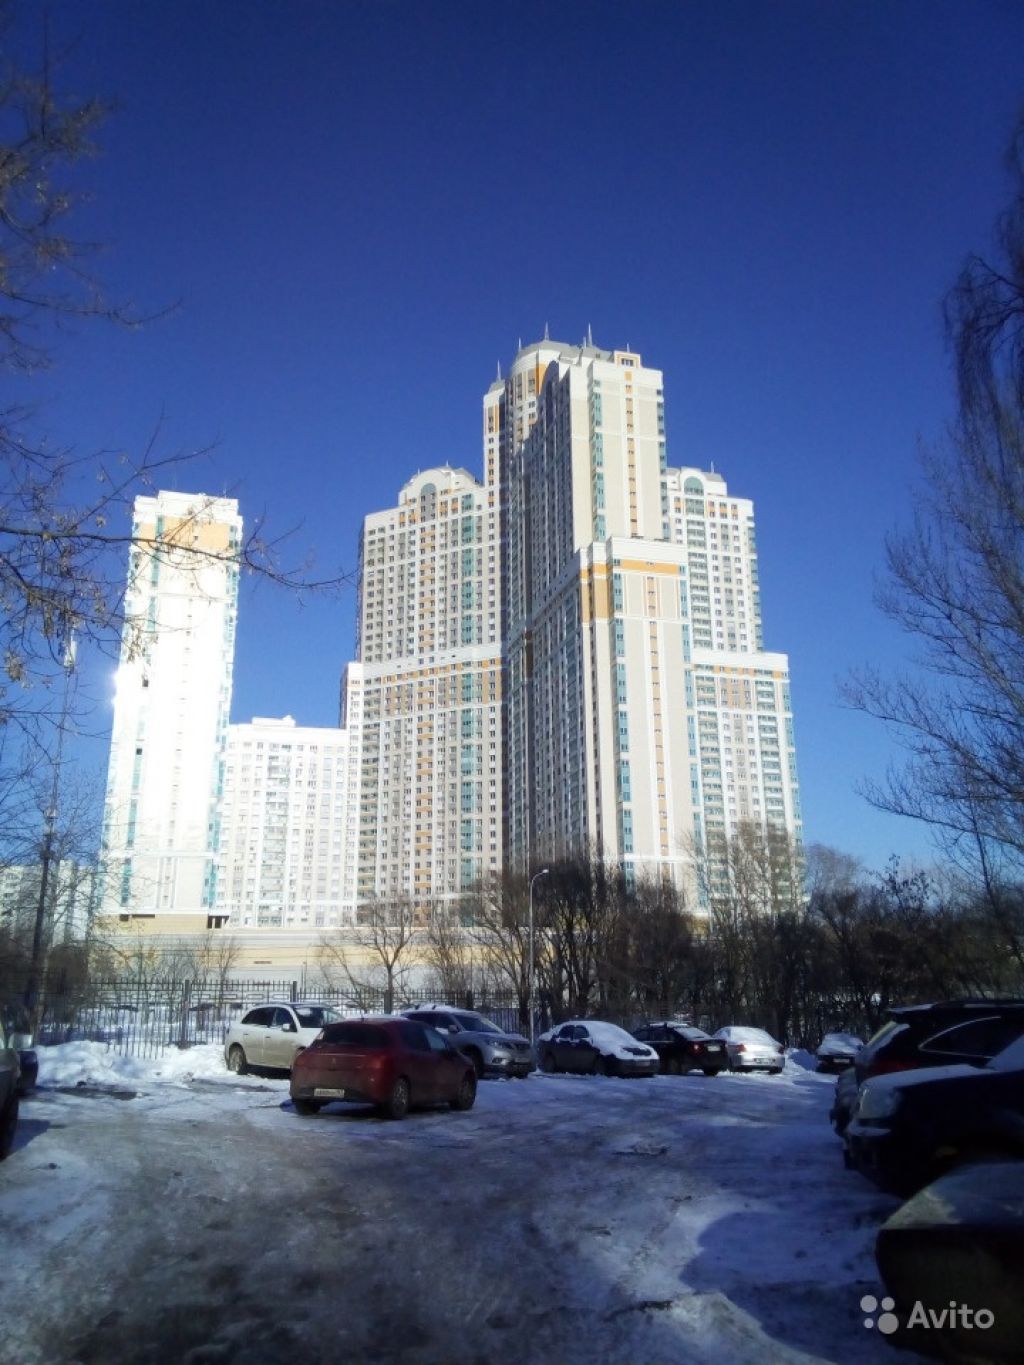 Продам квартиру 1-к квартира 43 м² на 6 этаже 20-этажного монолитного дома в Москве. Фото 1